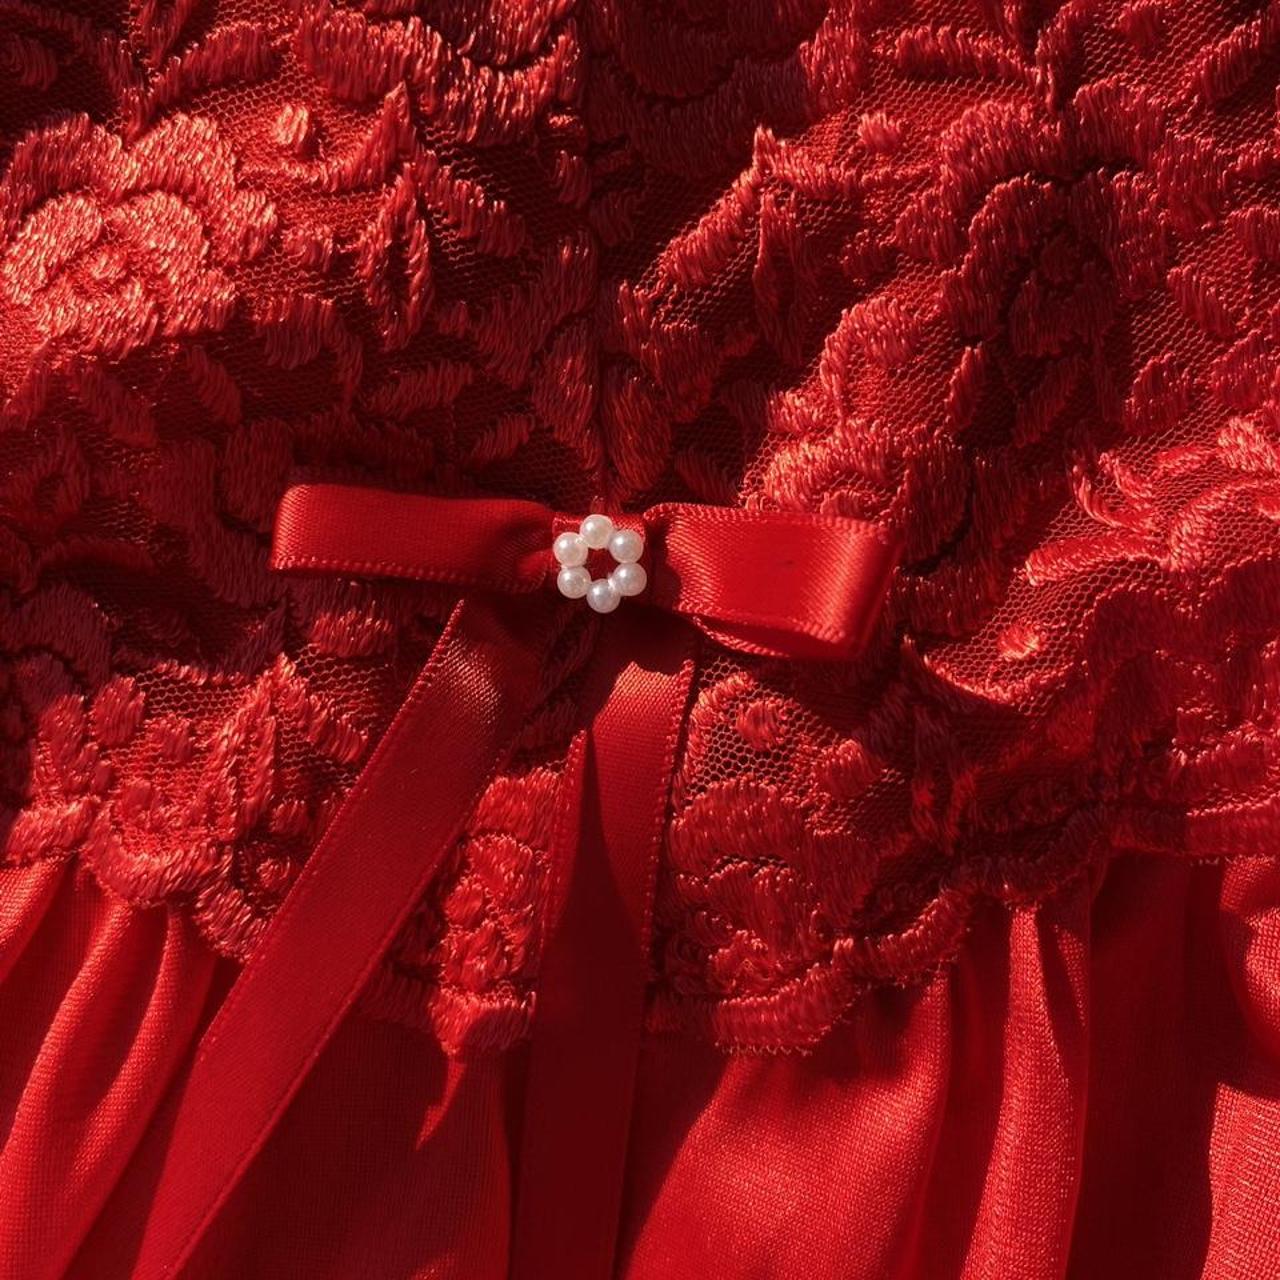 Product Image 4 - Vintage scarlet nightgown 

Brand: Vanity